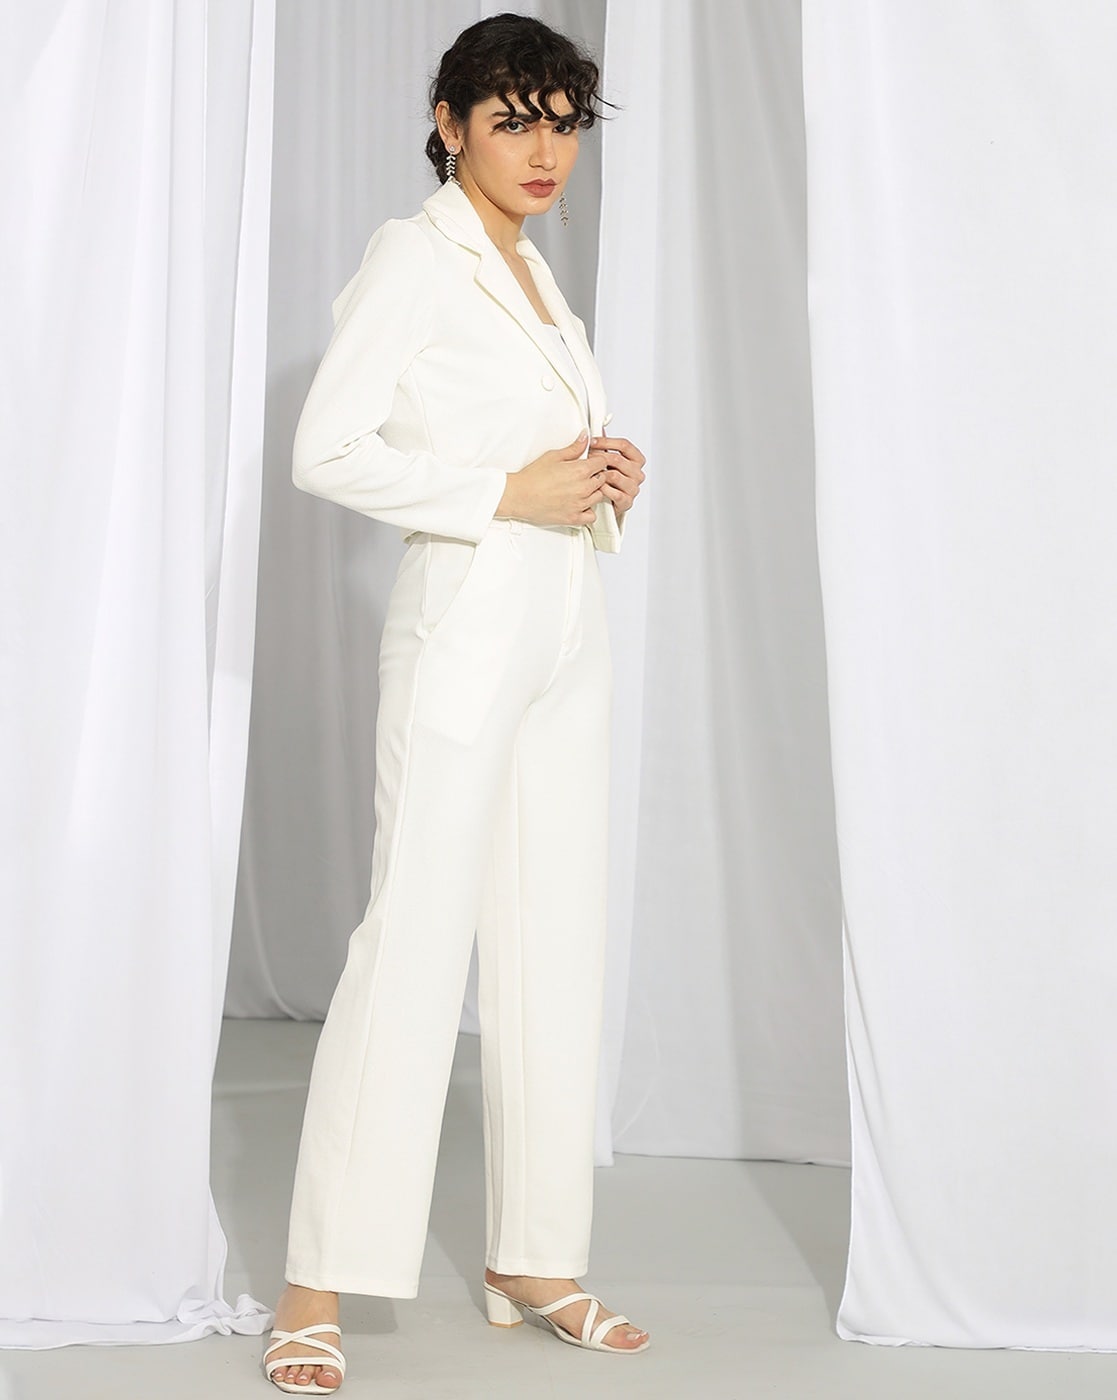 Professional Women Suits Office Business Ol White Formal Ladies Pant Suits  Two Piece Black Uniform Blazer Sets Ladies Suits - AliExpress